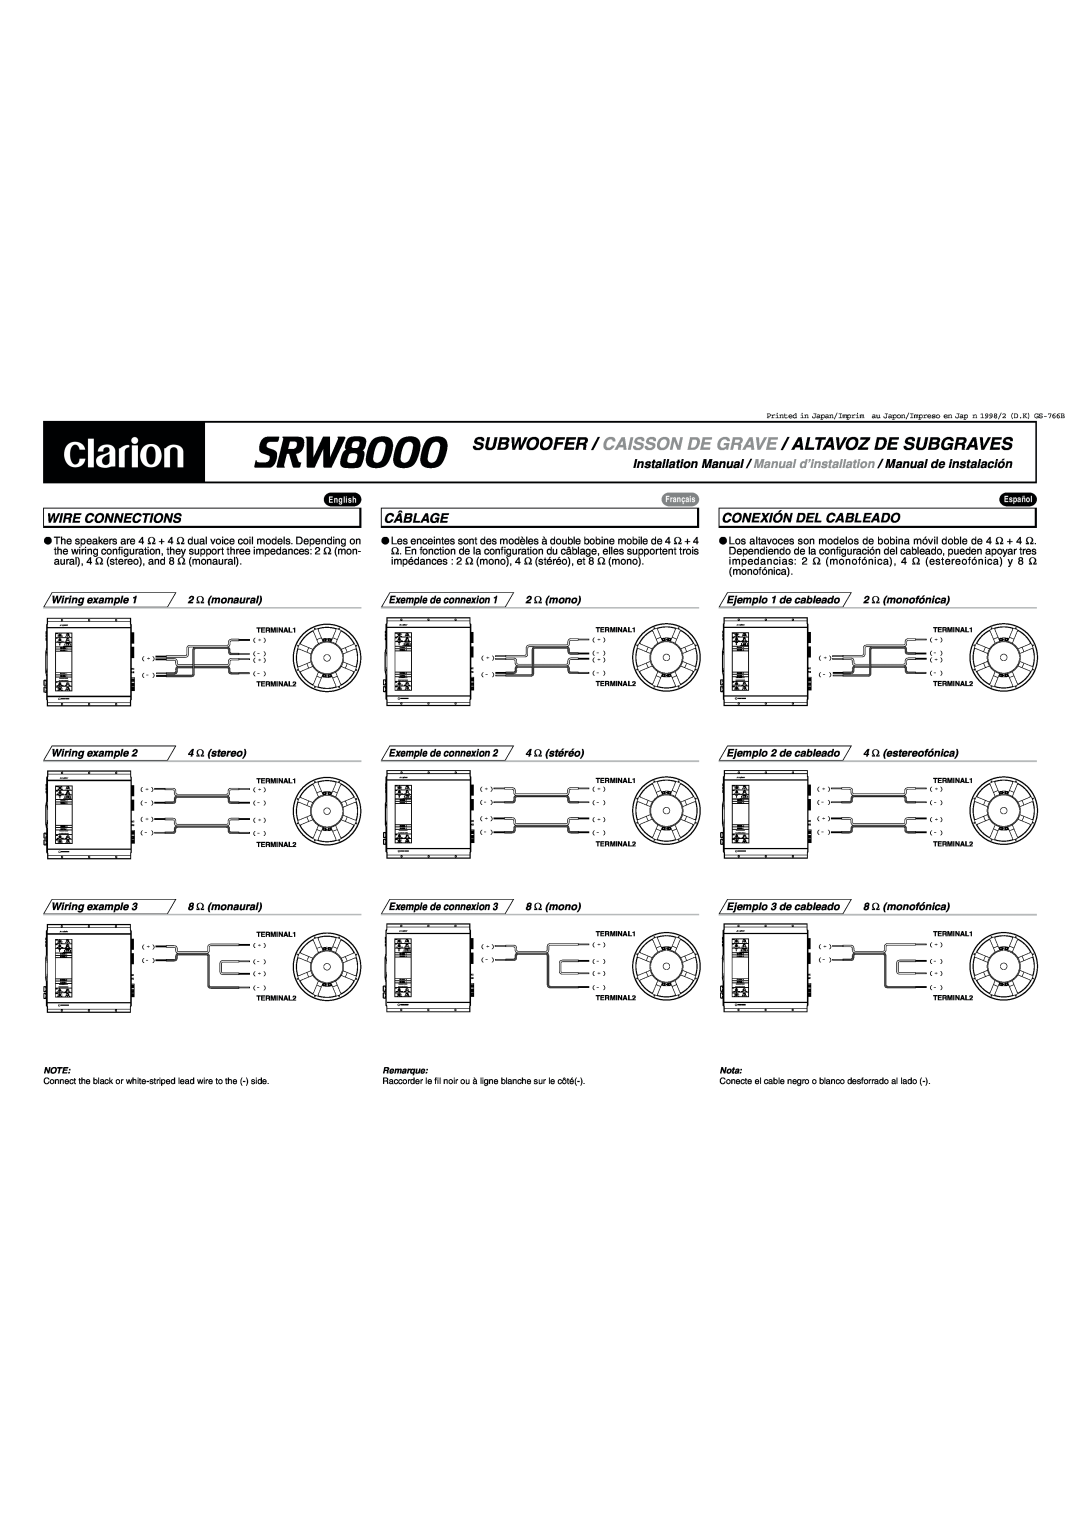 Clarion SRW8000 installation manual Wire Connections, Câblage, Conexión Del Cableado 